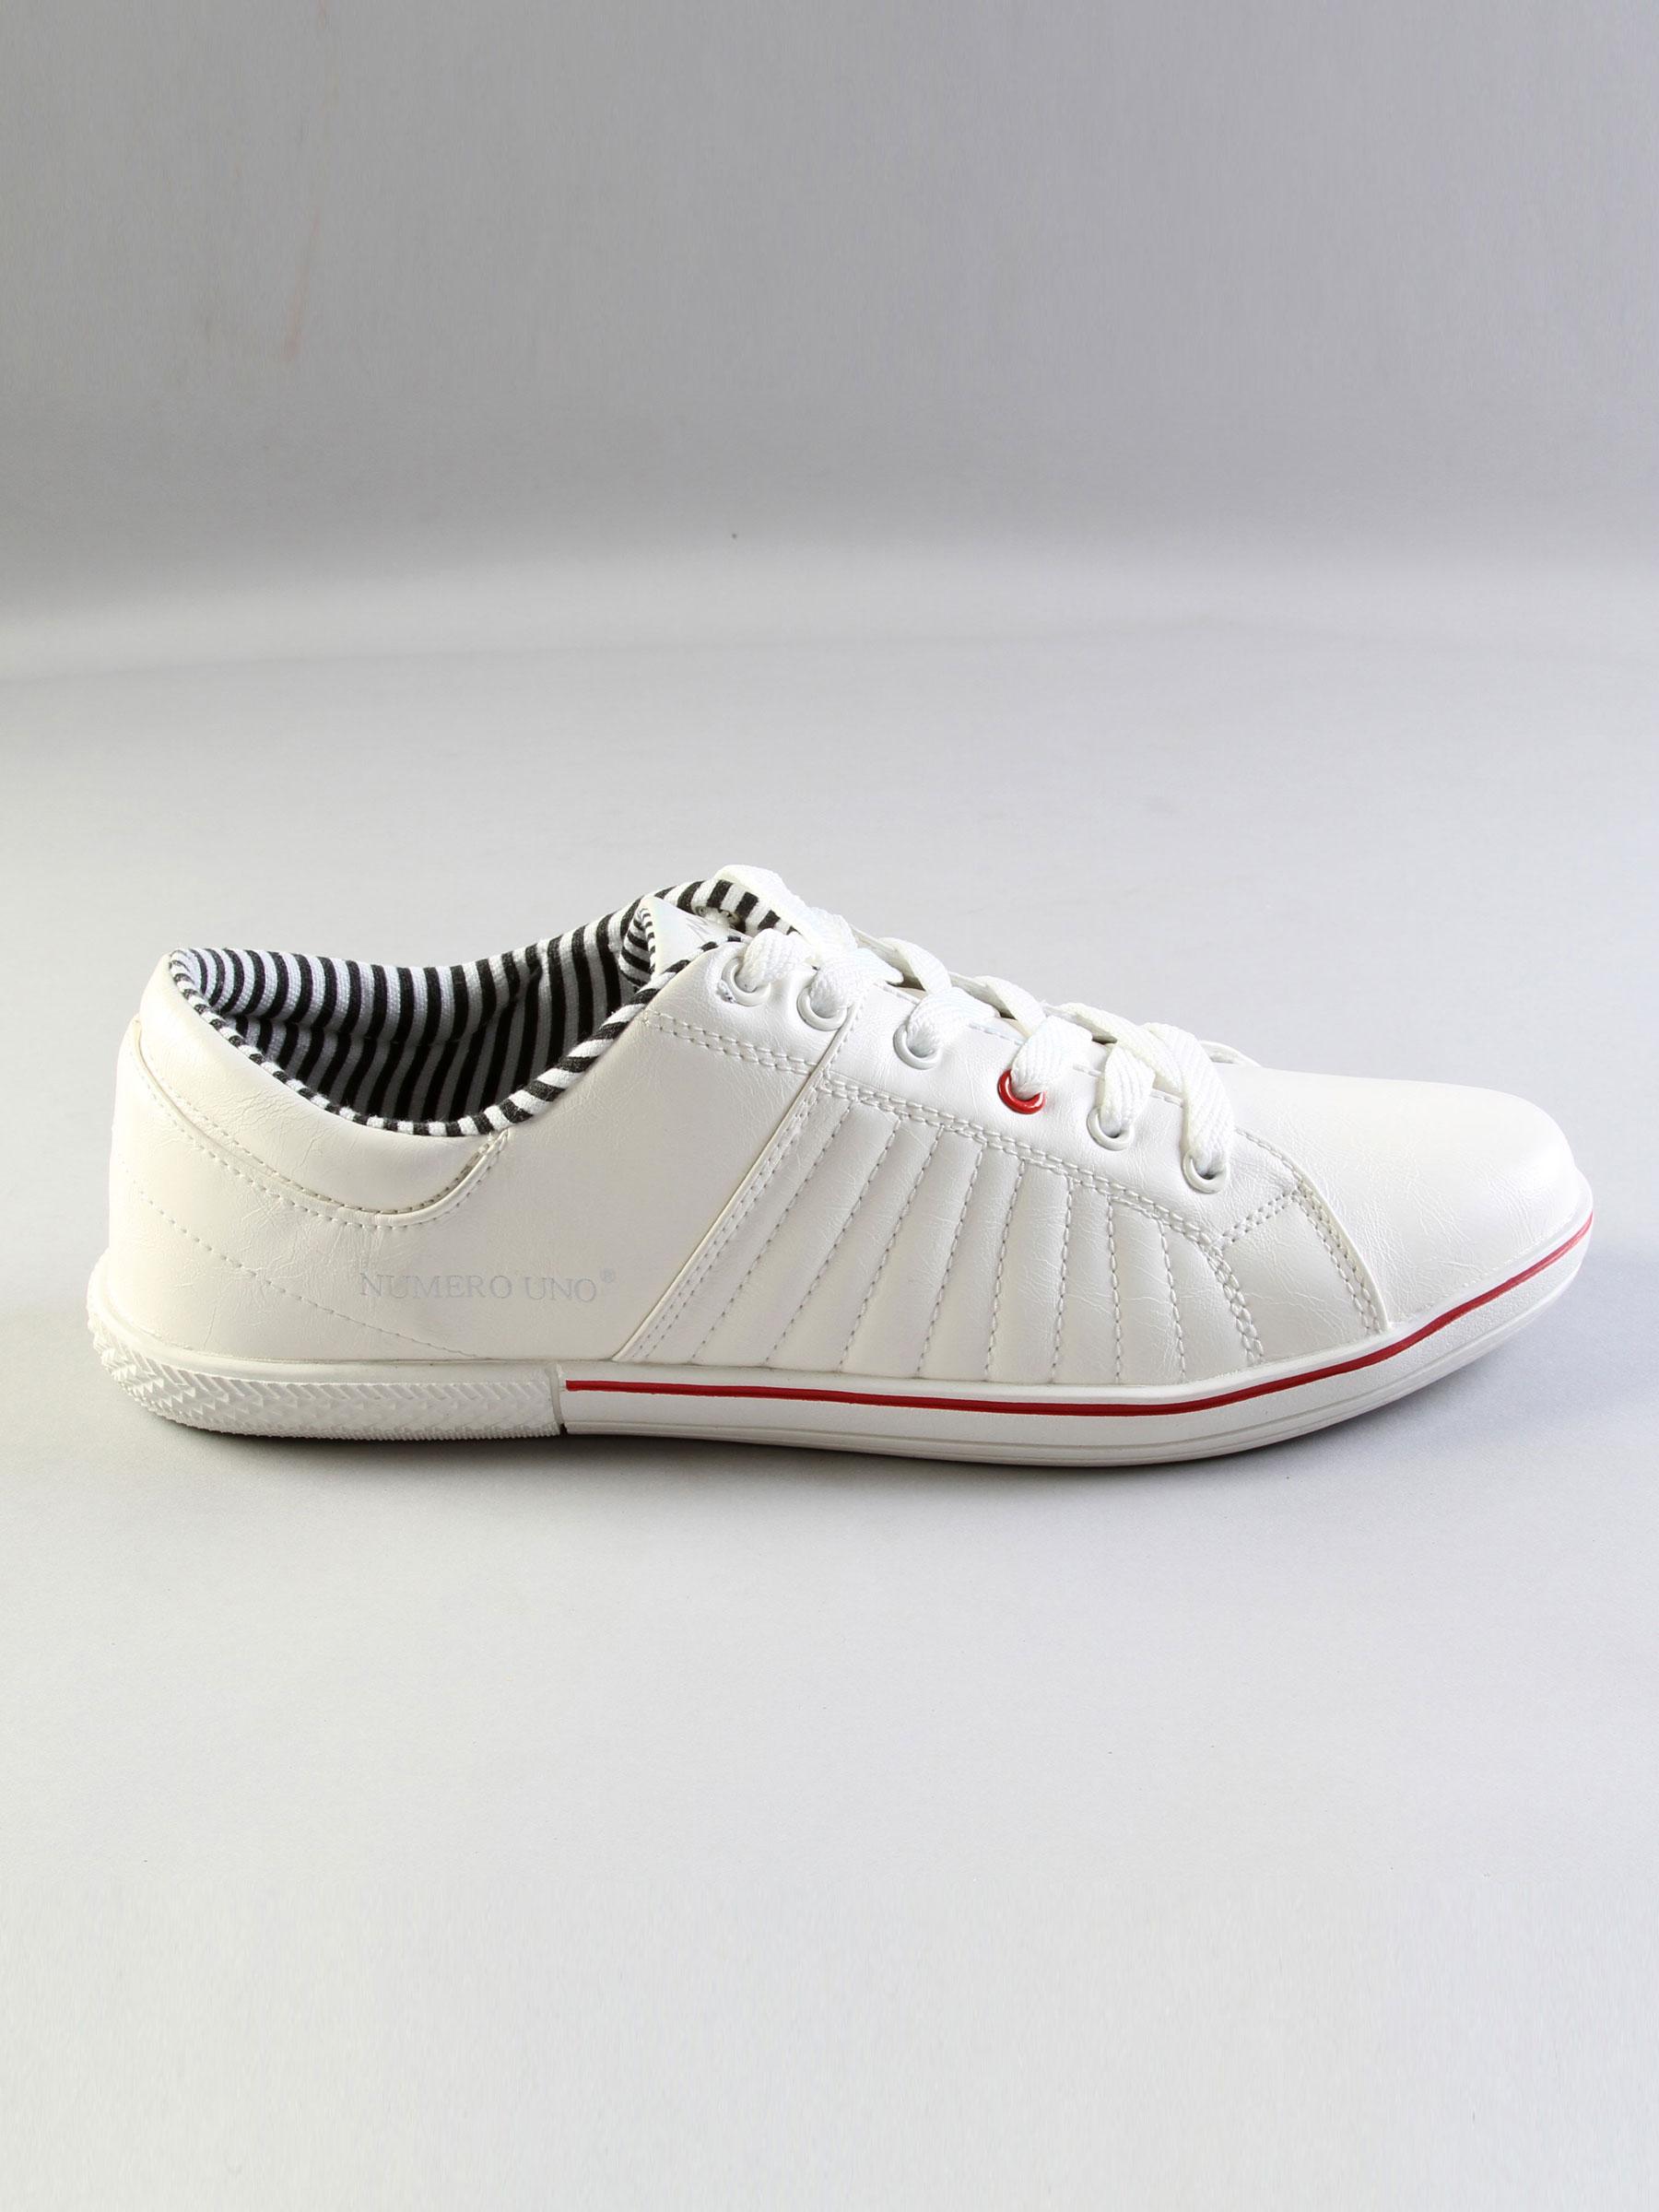 Numero Uno Men's Casual White Sneakers Shoe